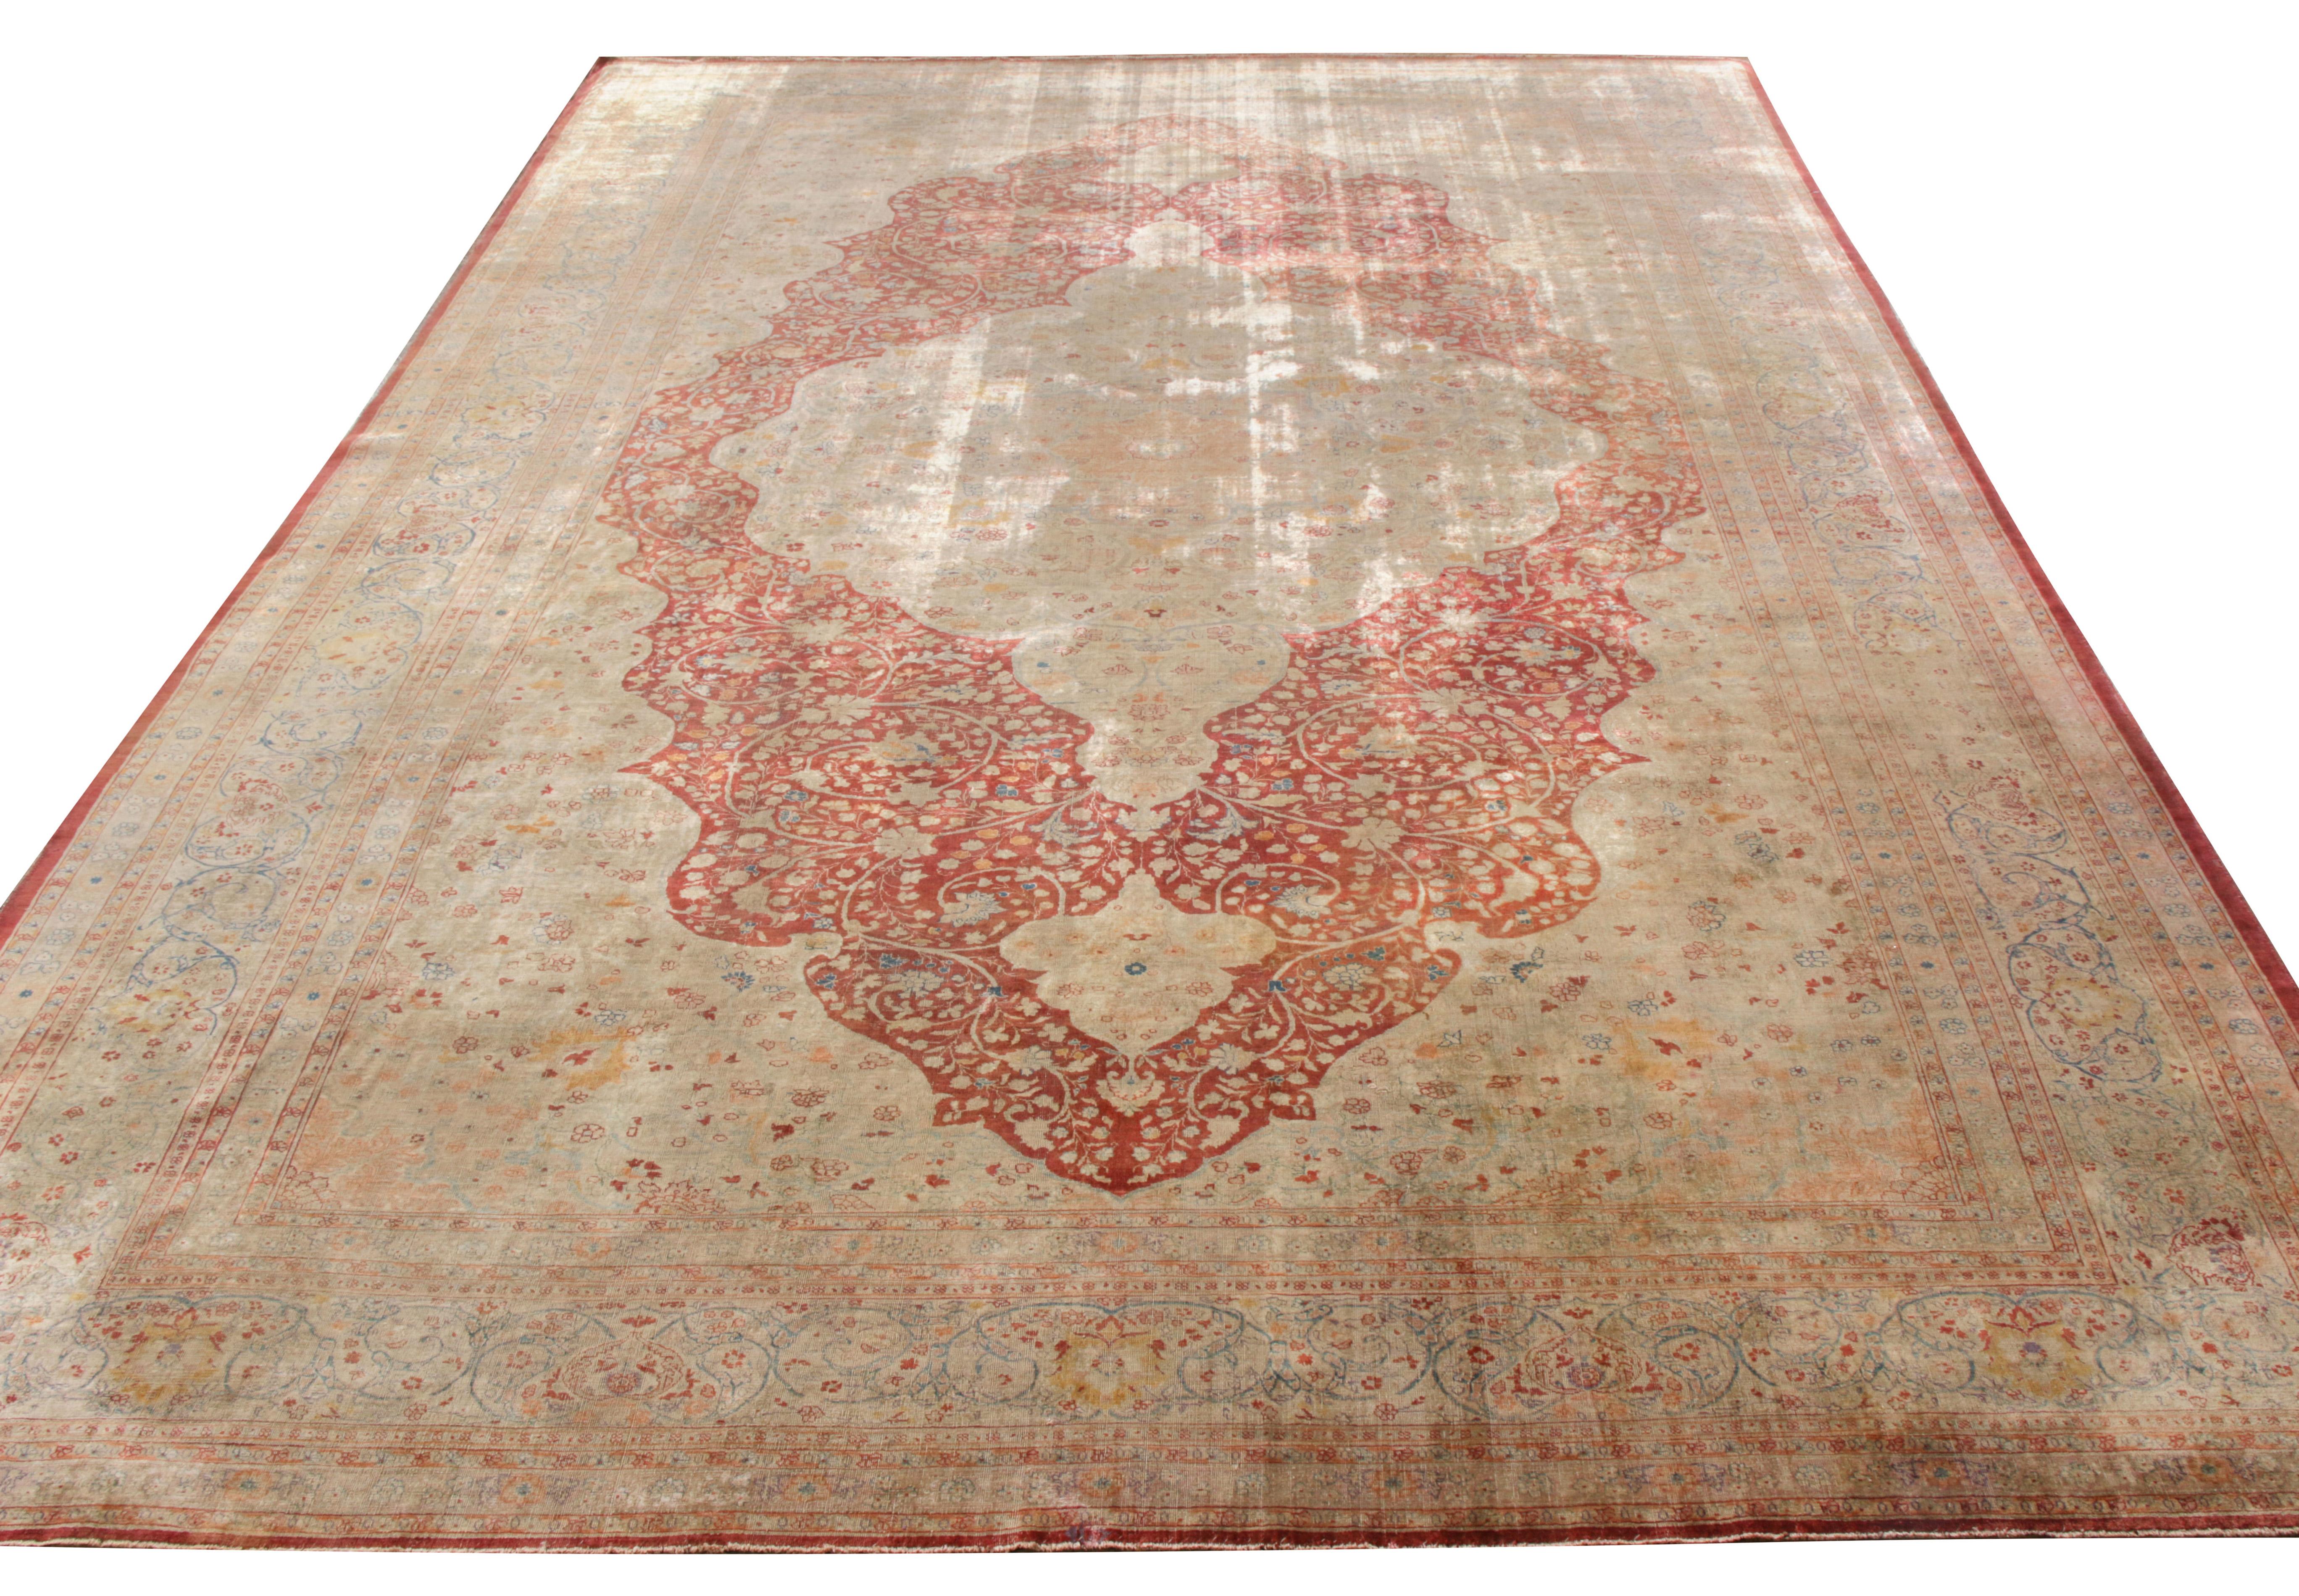 Ce tapis Tabriz antique noué à la main et datant des années 1920-1930 présente un somptueux médaillon floral dans des tons rouge et beige-brun. Les tons éclatants de rouge riche sont rehaussés par des nuances de bleu, de blanc et d'orange qui